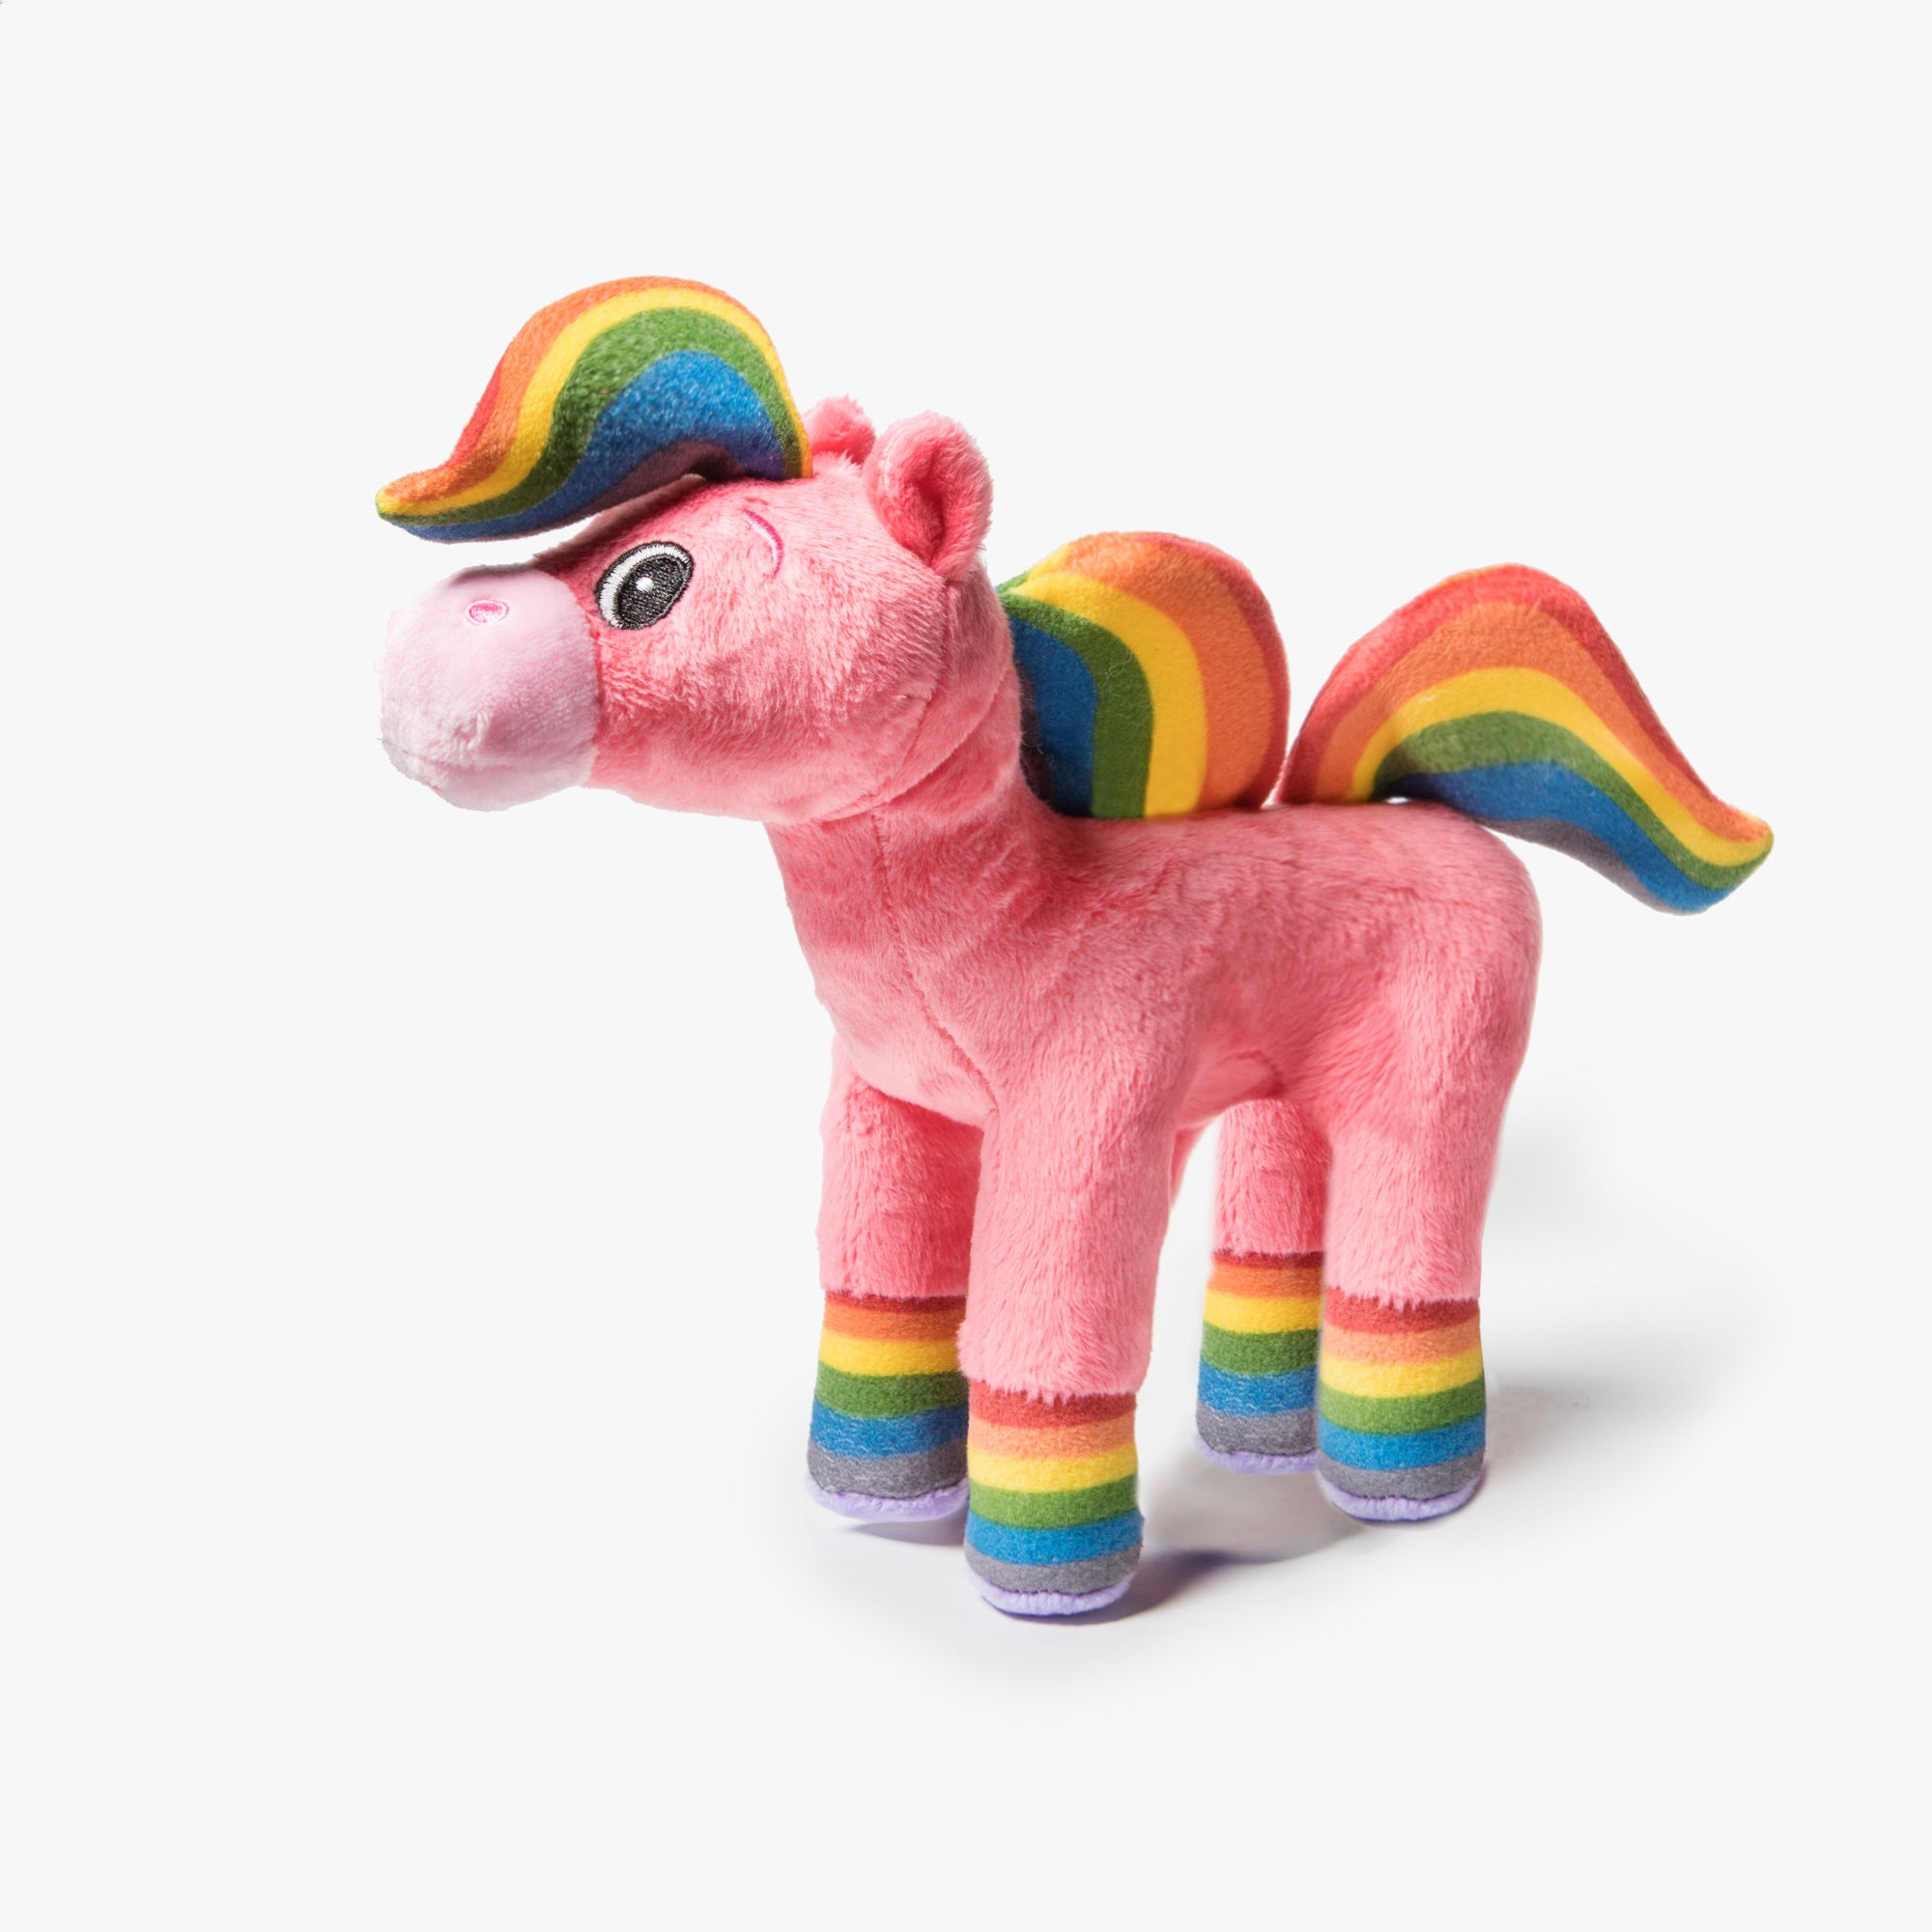 stuffed pony toy